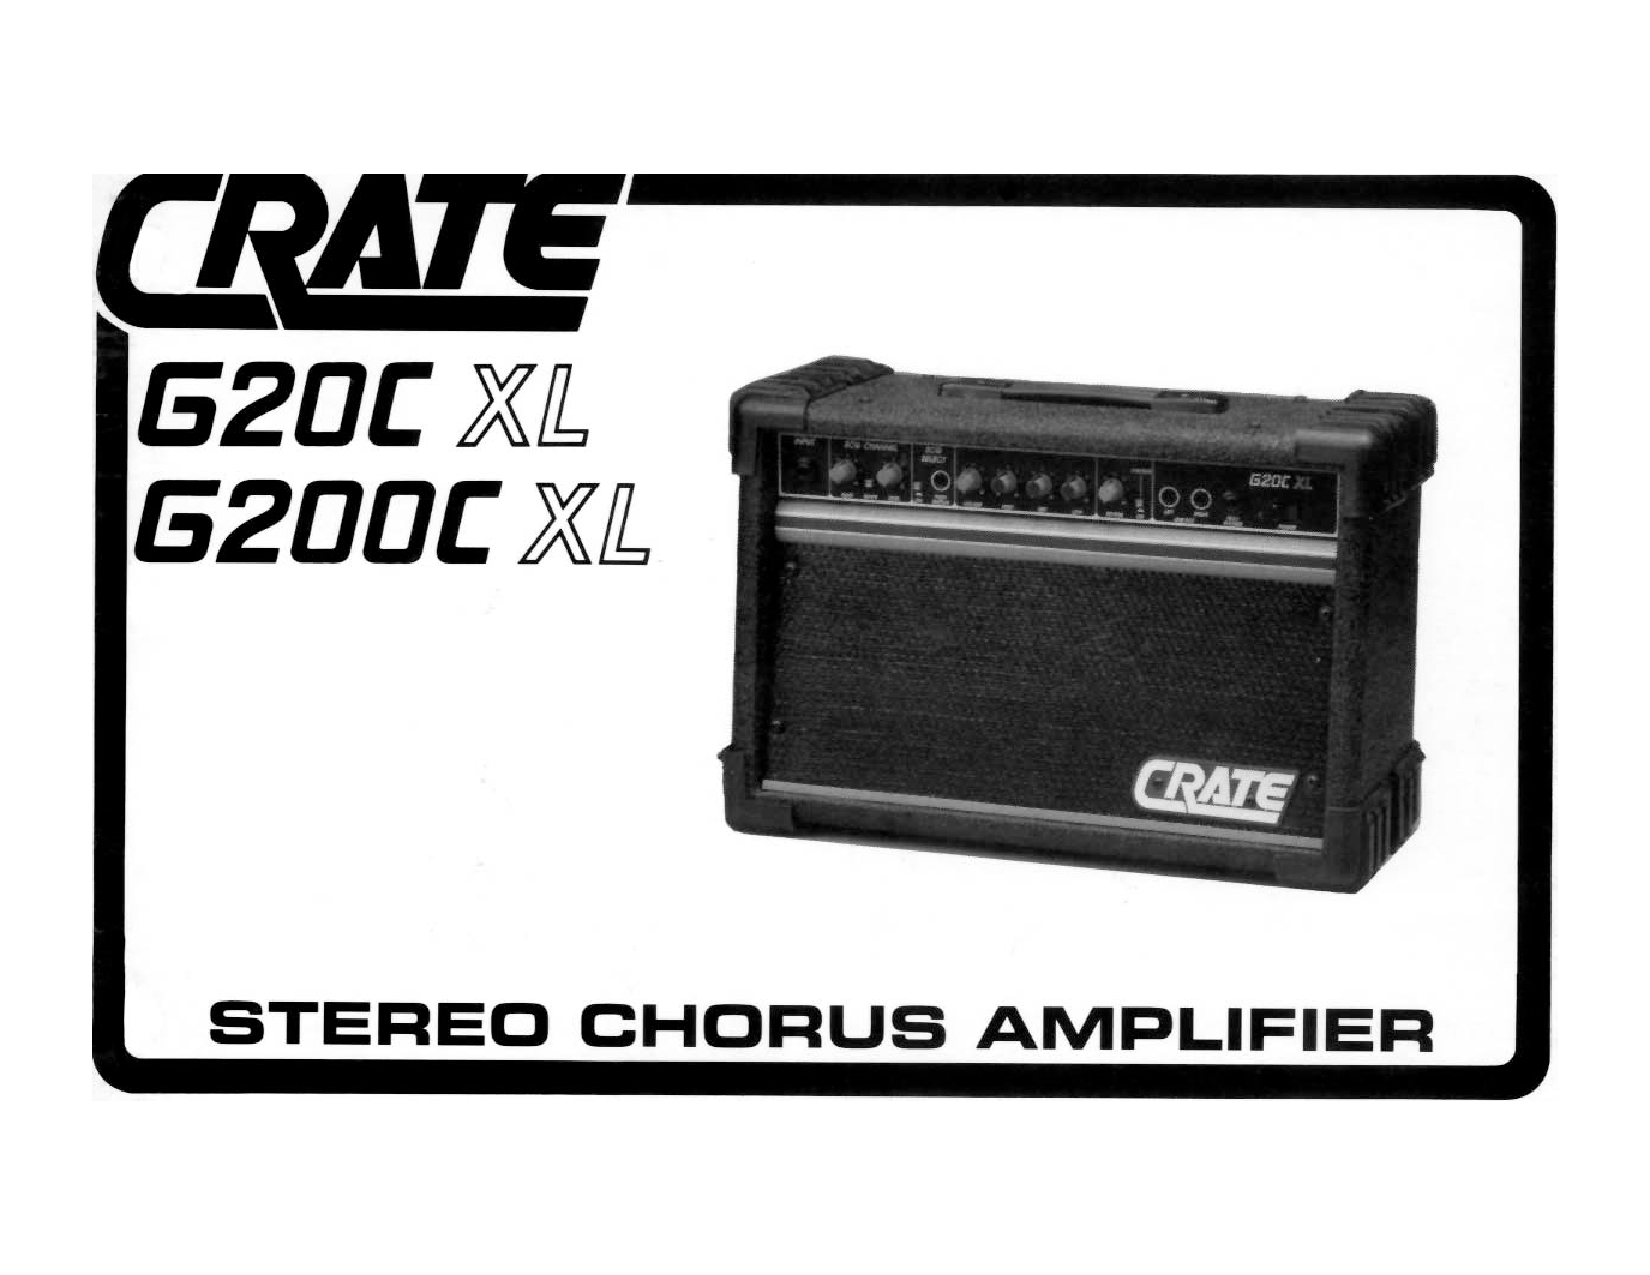 Crate Amplifiers G20CXL, G200CXL User Manual